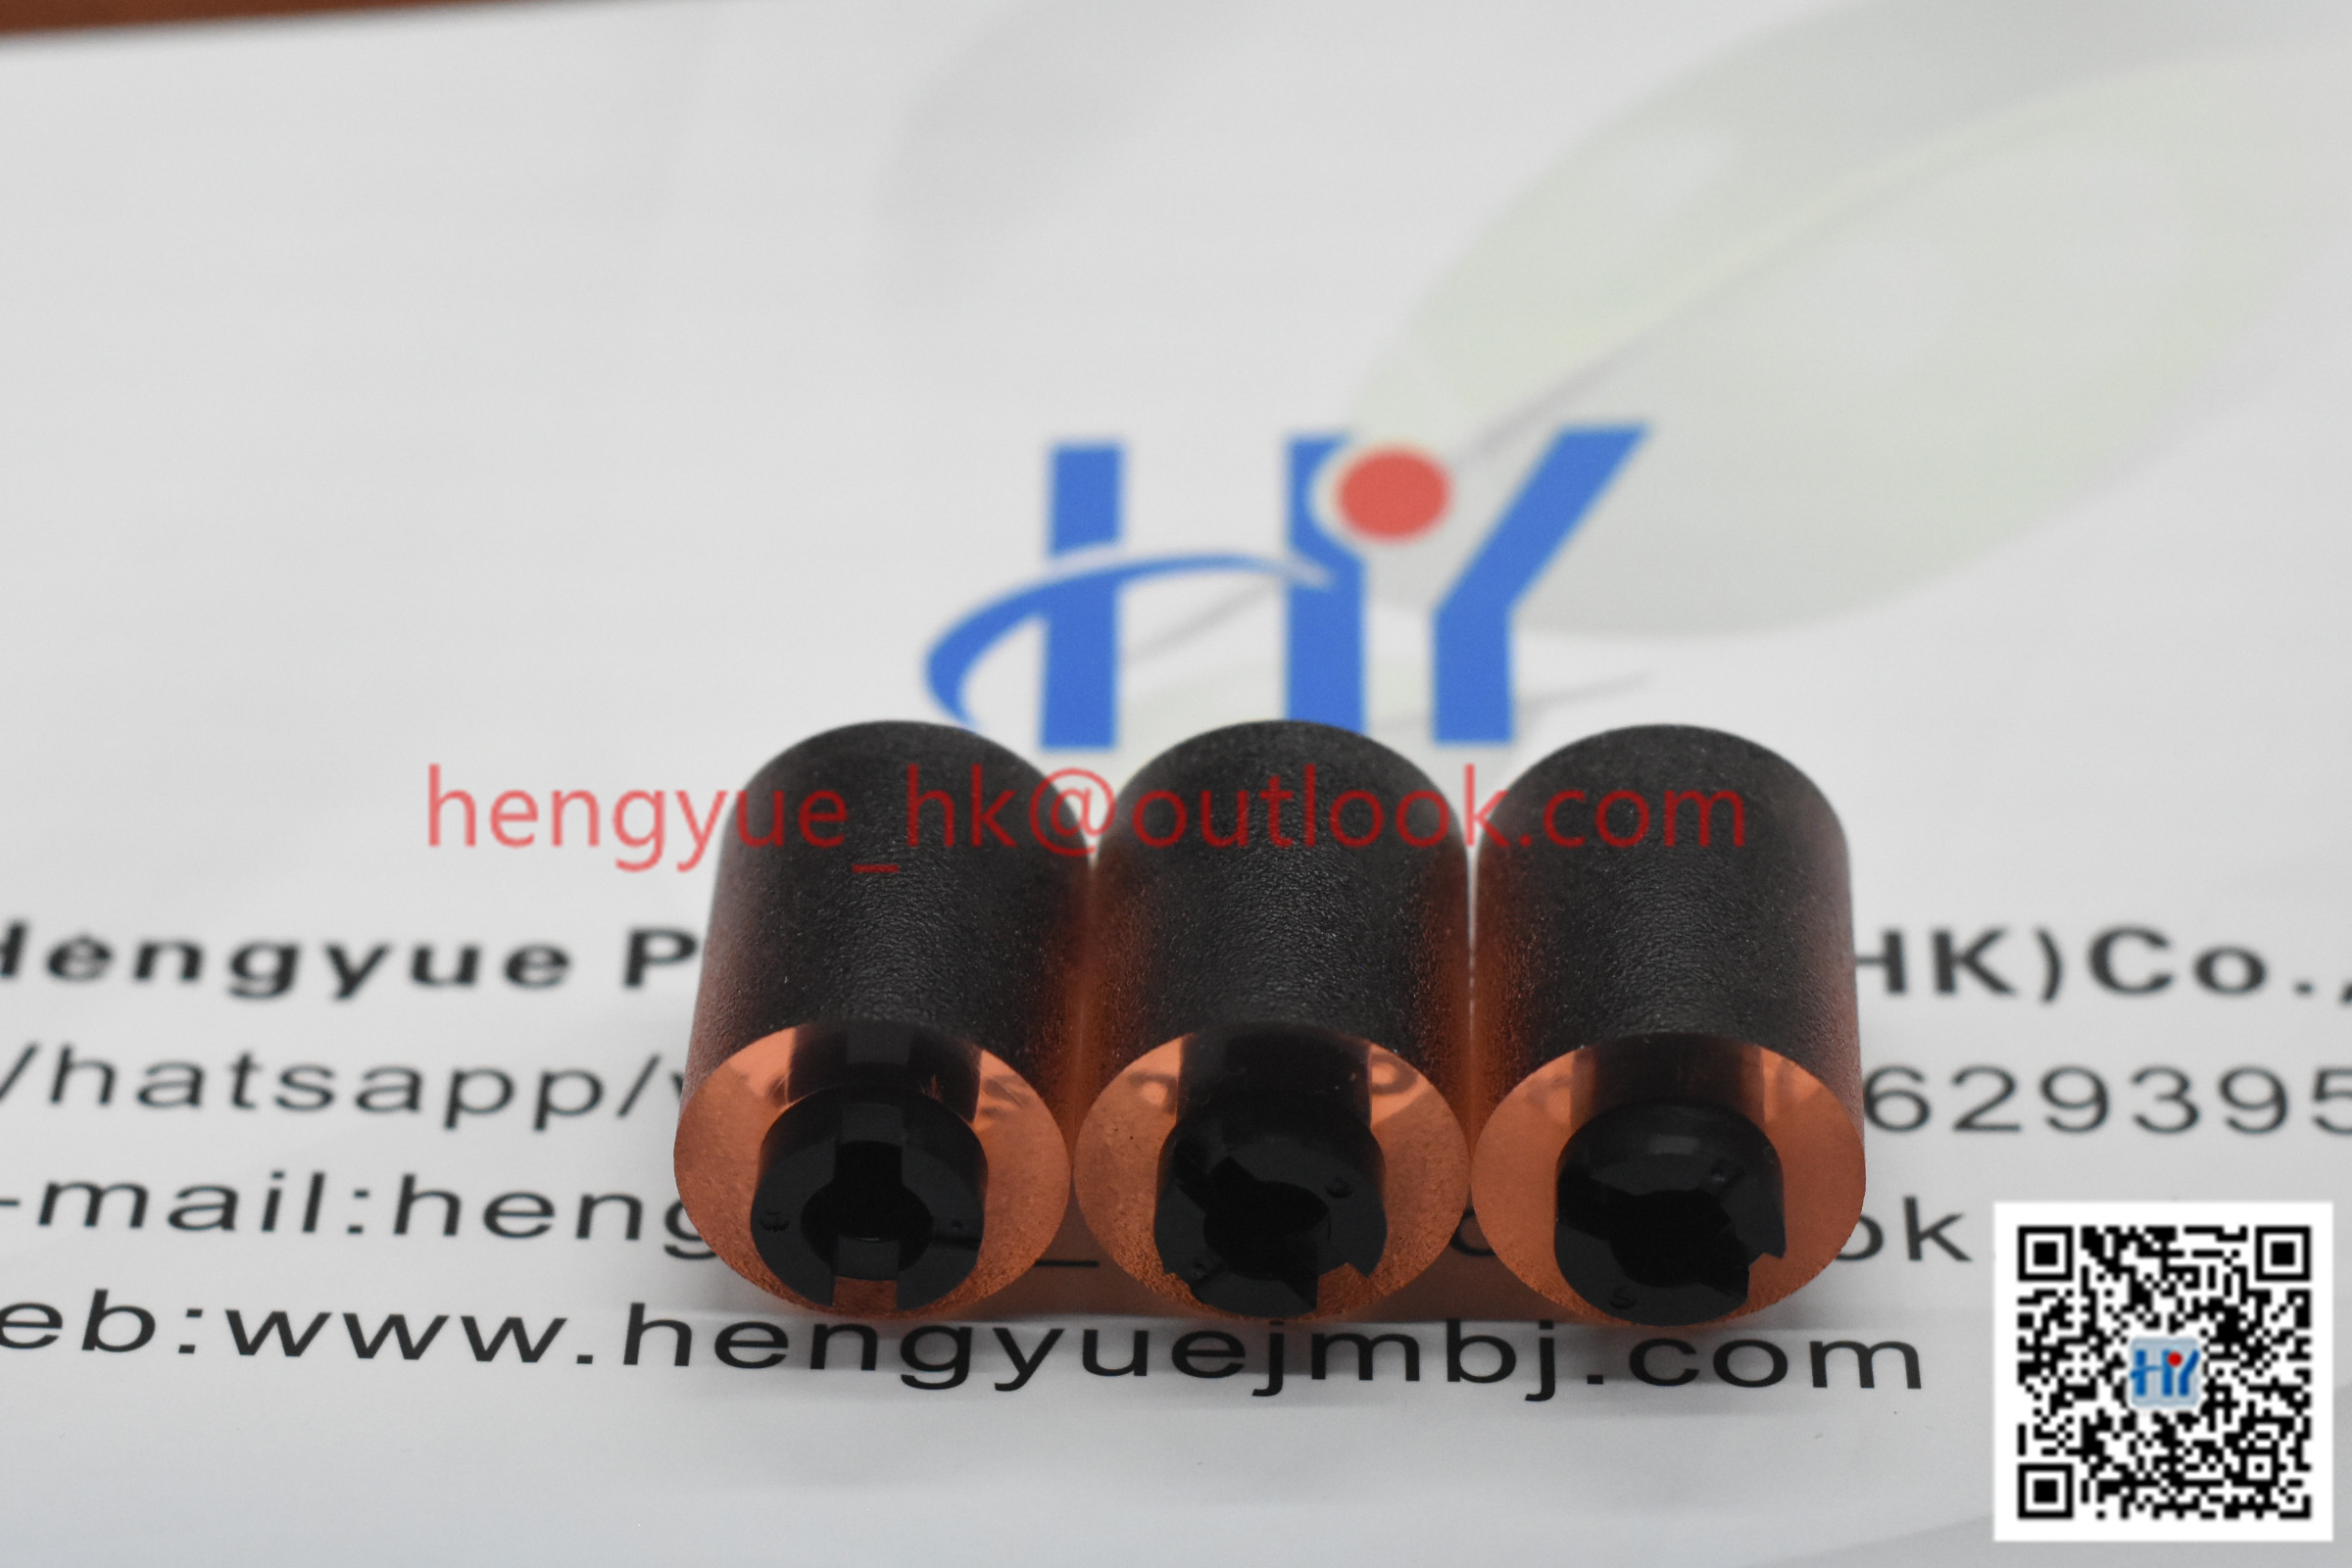 Hengyue Precision Parts (HK) Co., Ltd.